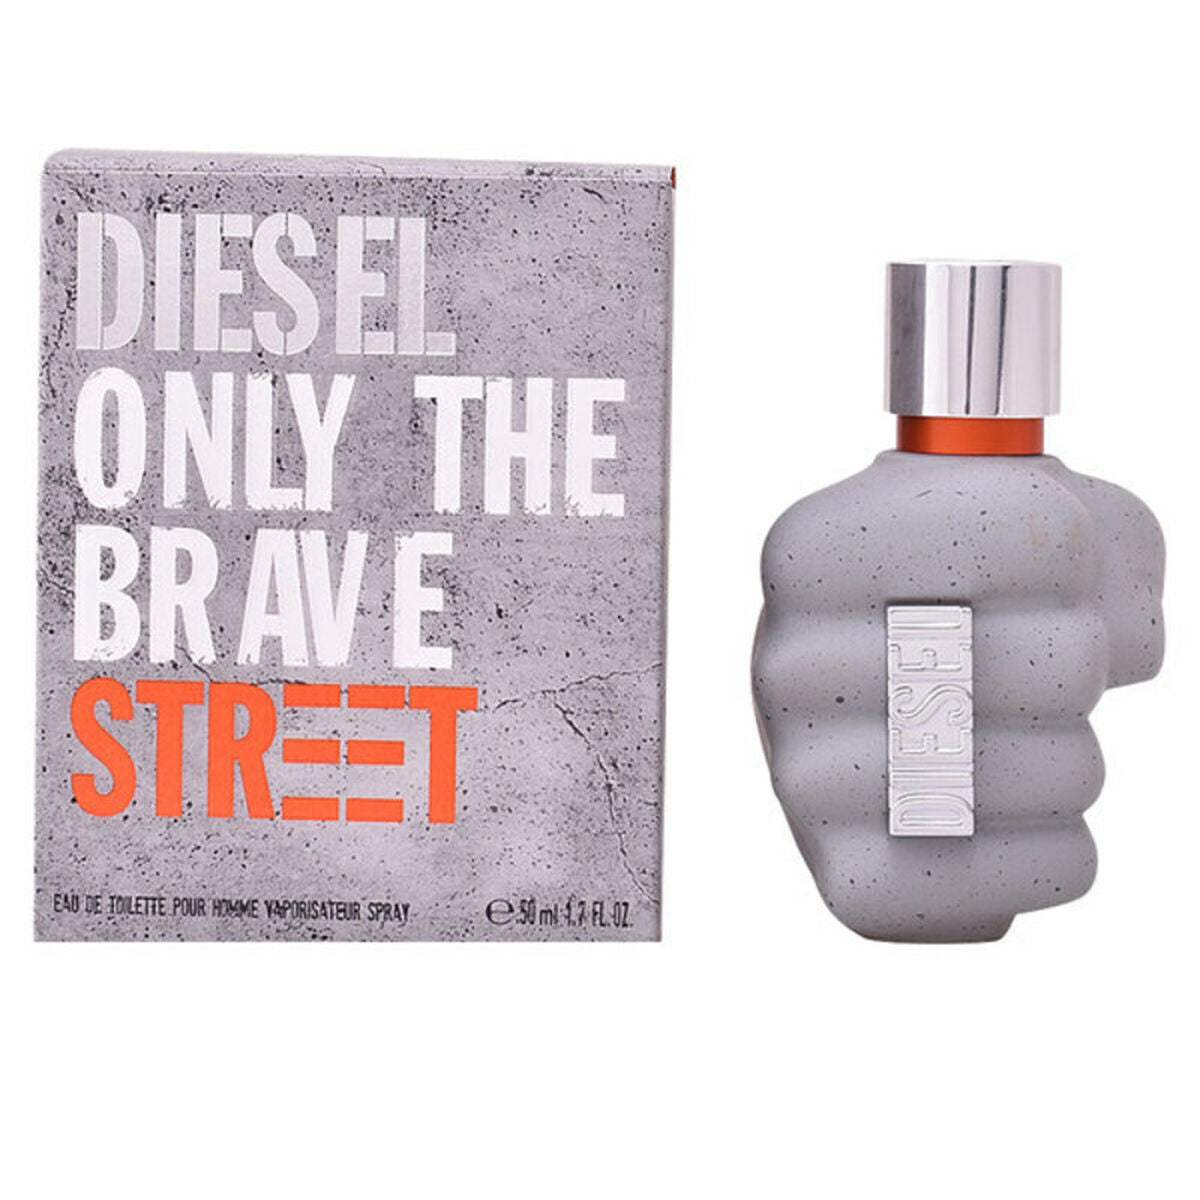 Parfum Homme Diesel Only The Brave Street - Diesel - Jardin D'Eyden - jardindeyden.fr